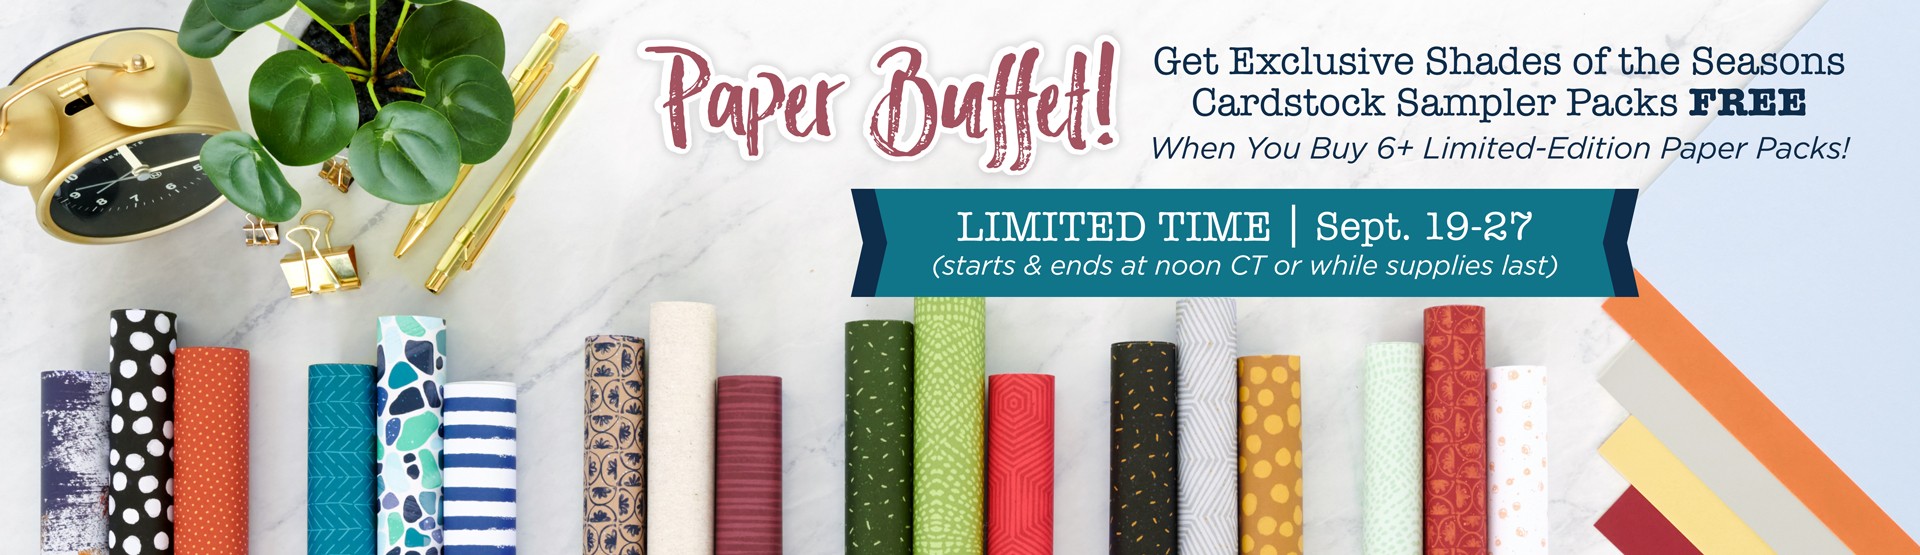 Paper Buffet Banner